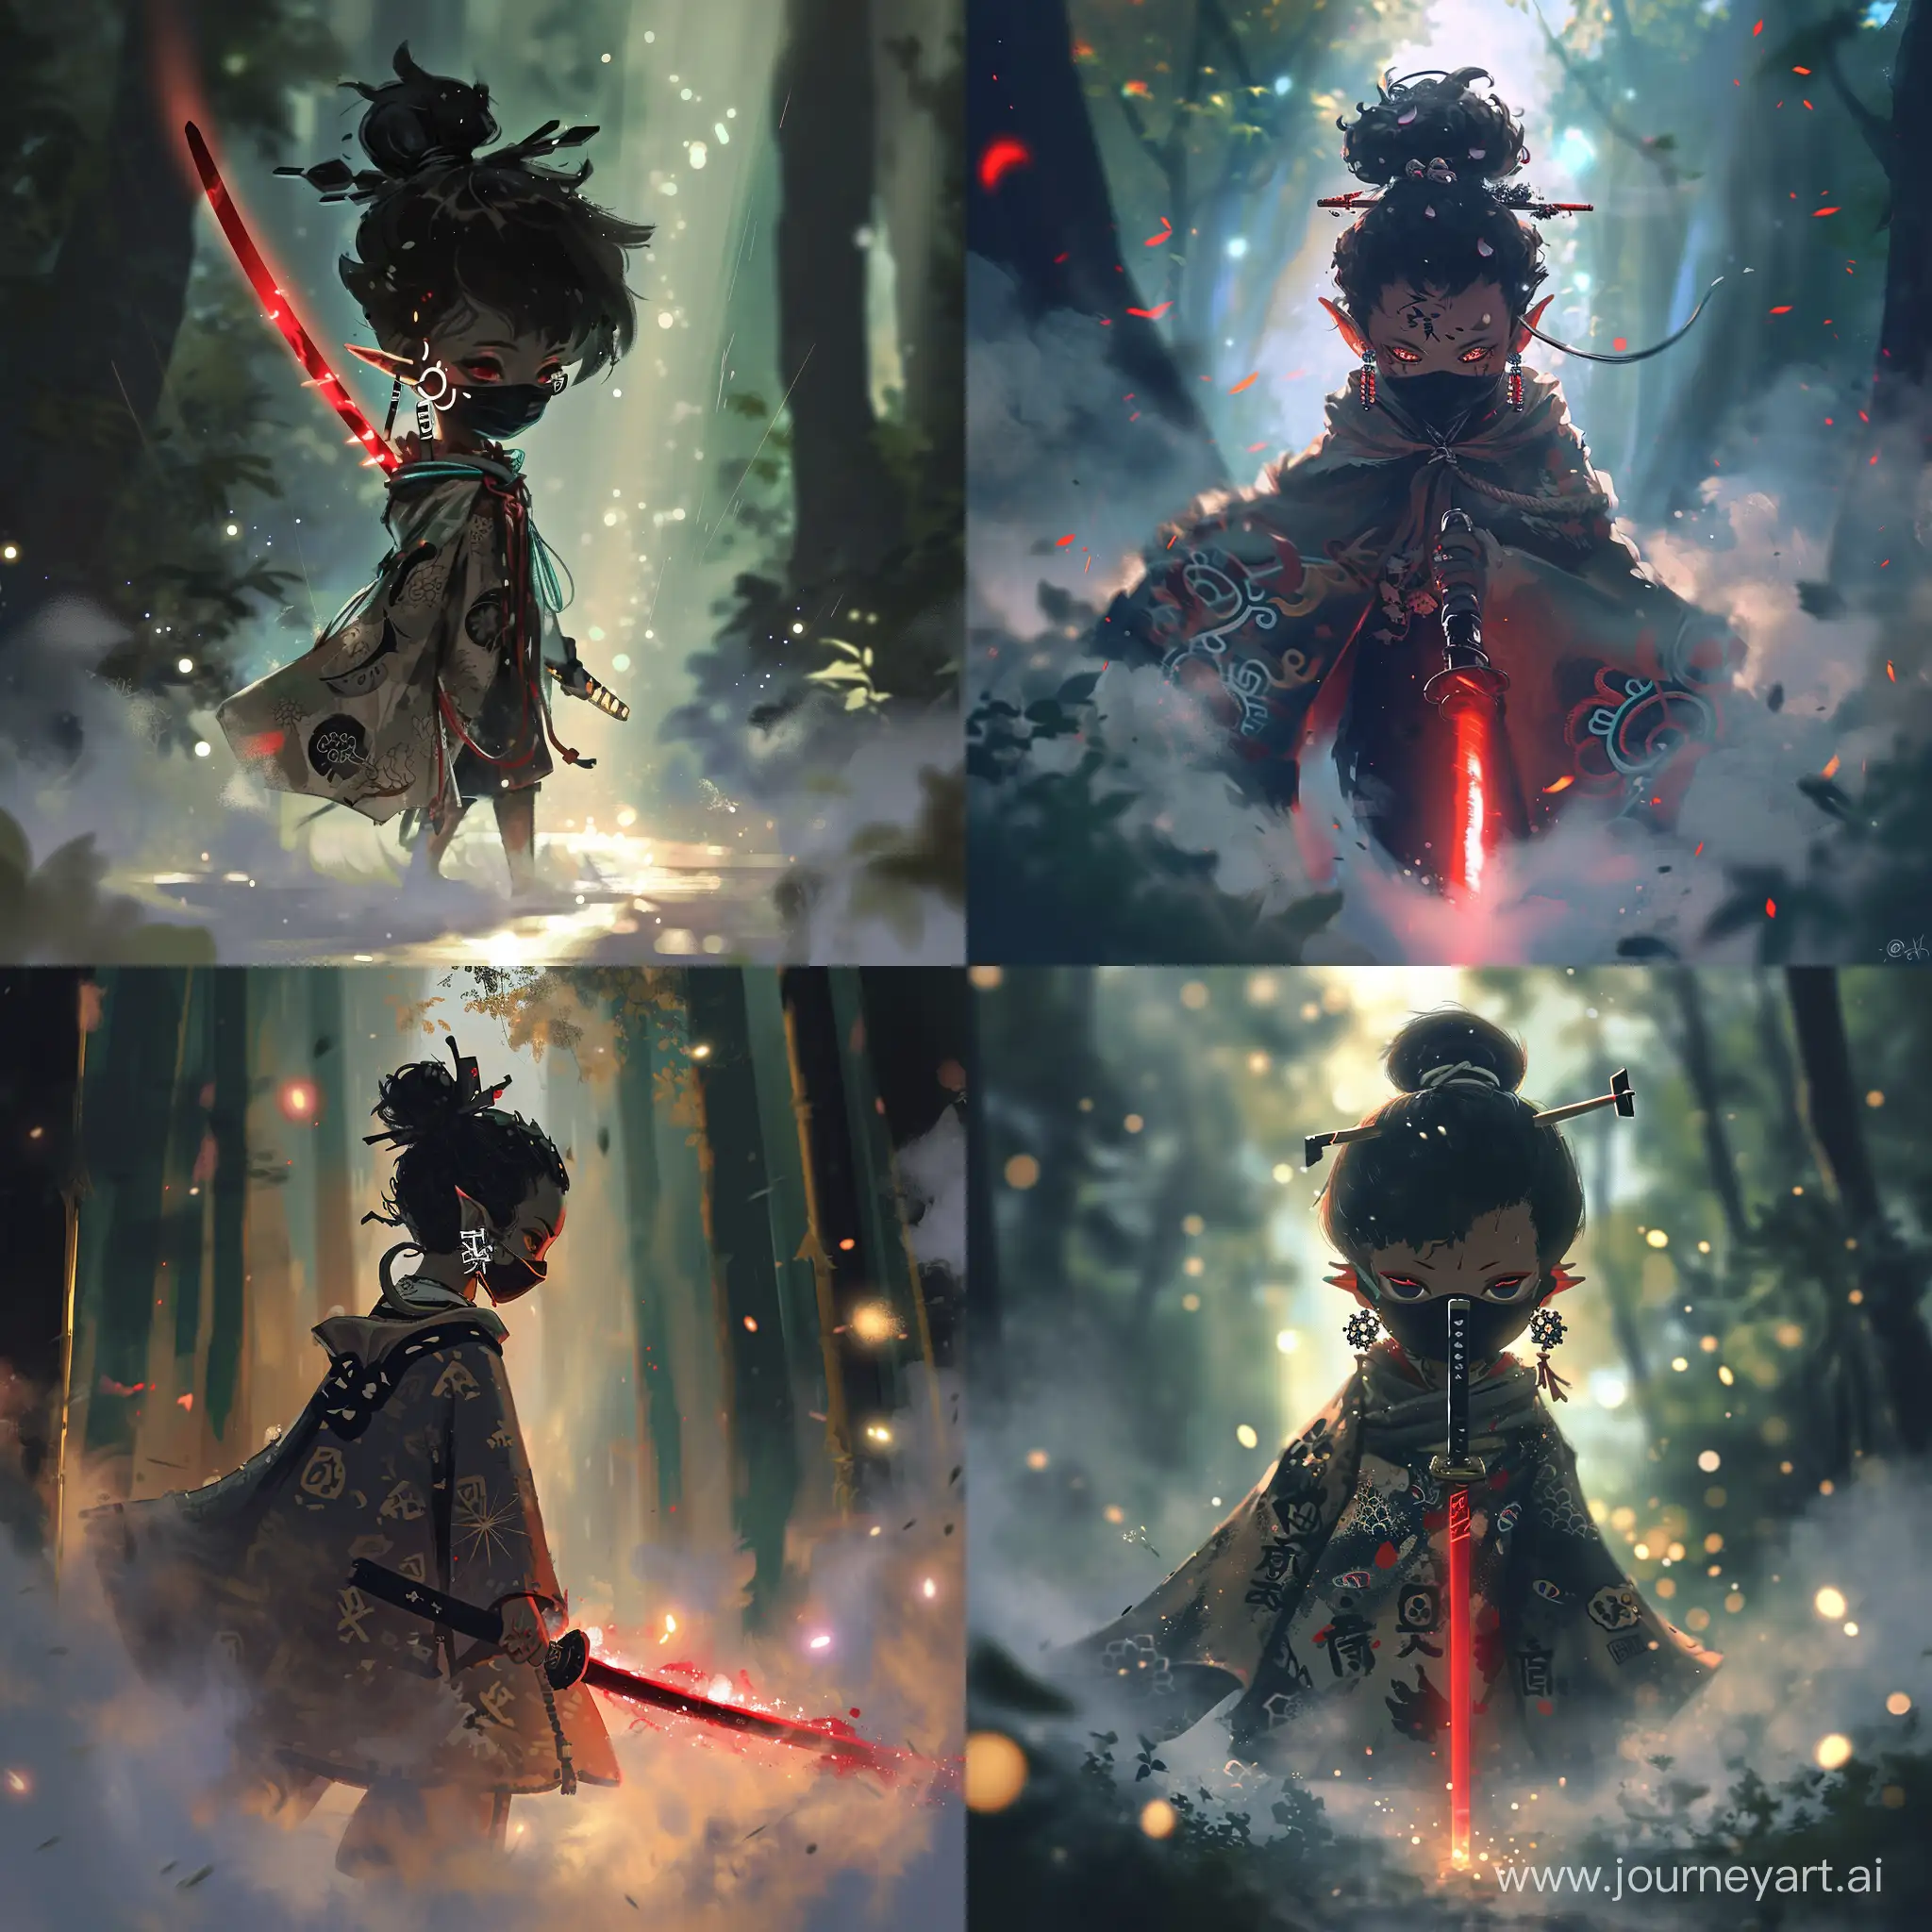 Маленький демон подросток, от которой исходит красивый магический туман, на нем японские серьги и плащ, украшен японскими символами. В него вонзен темно красный меч, идет по туману с тёмной маской, закрывающей лицо. Anime style